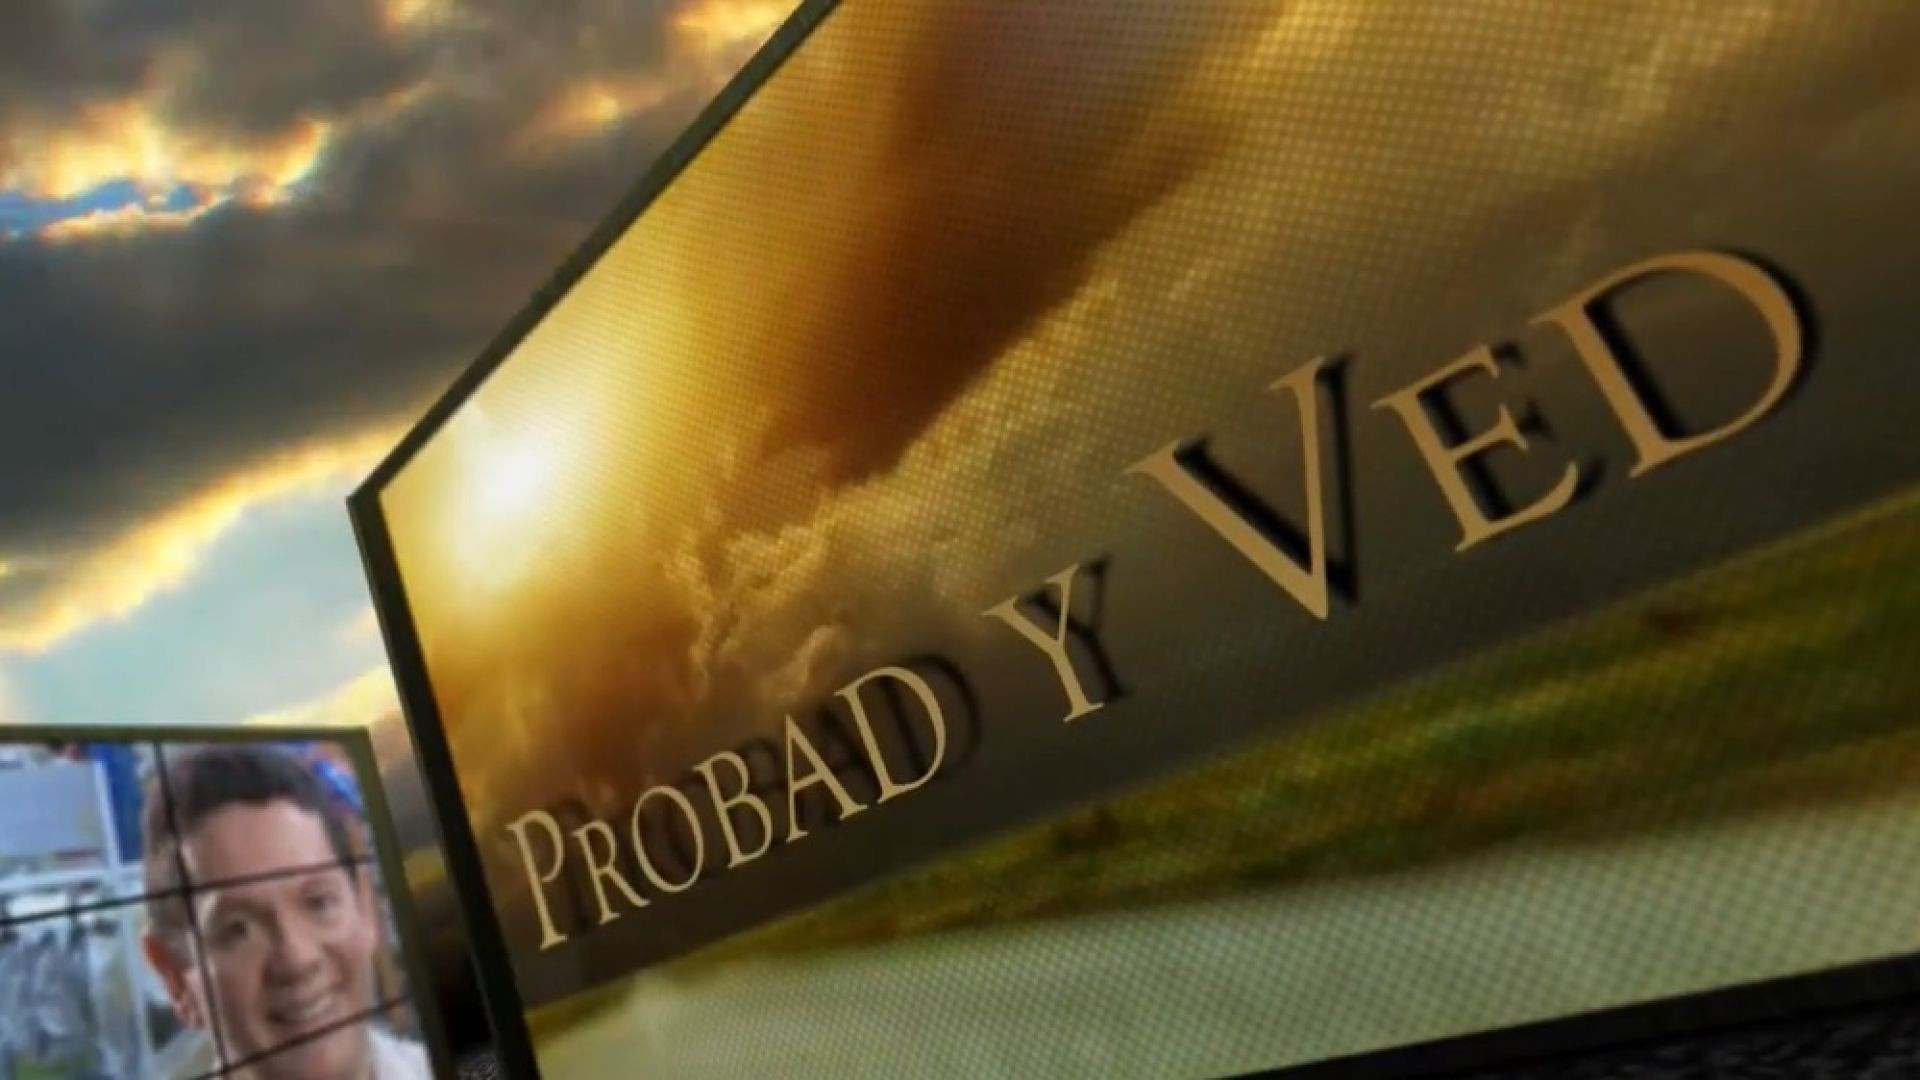 ⁣Probad y Ved 2013 - El mayordomo fiel - 19/Ene